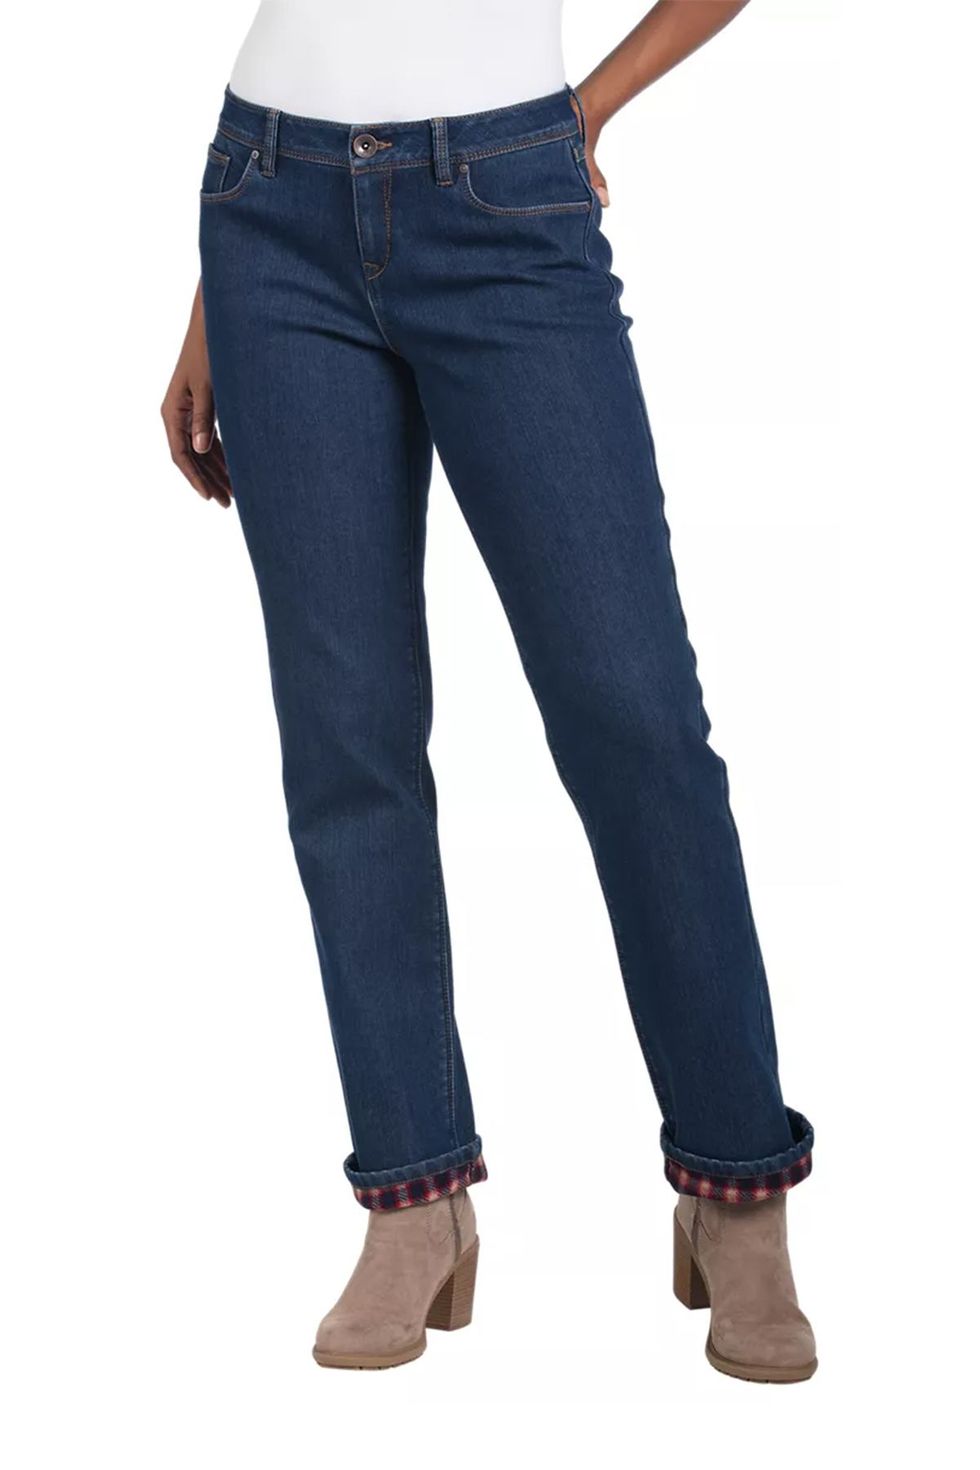 Bean Fleece Lined Jeans Womens  Best Women Fleece Lined Jeans